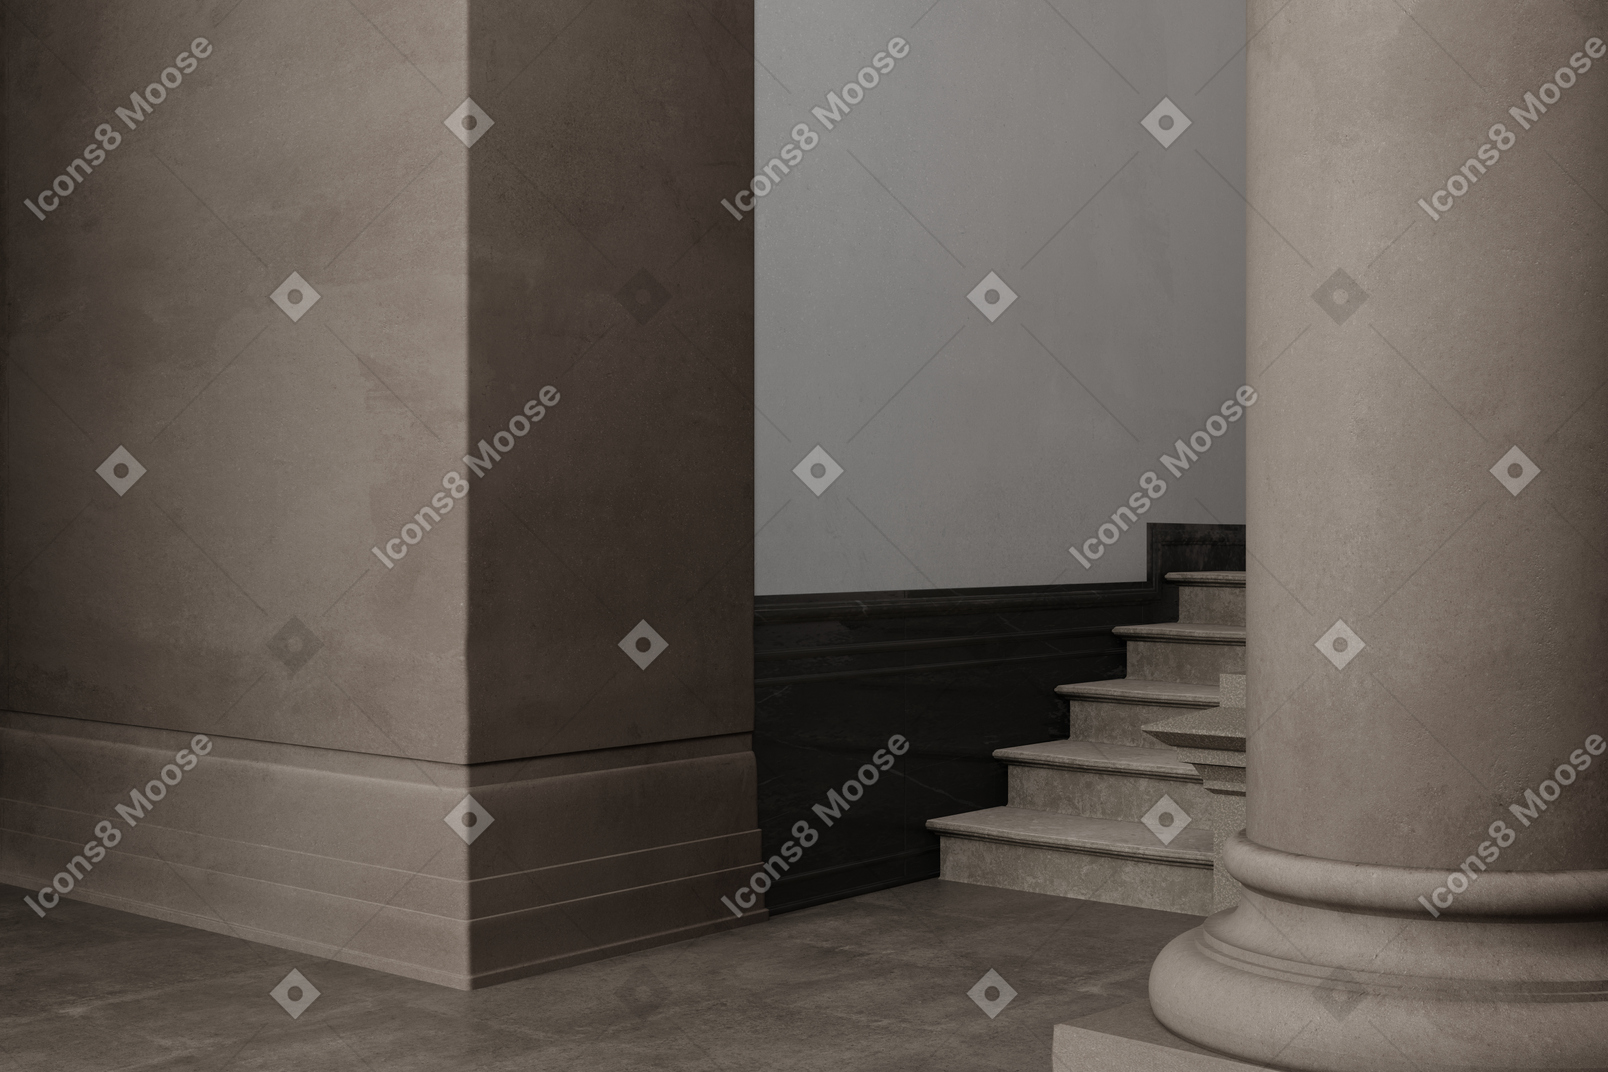 Interior marrom com escadas e coluna